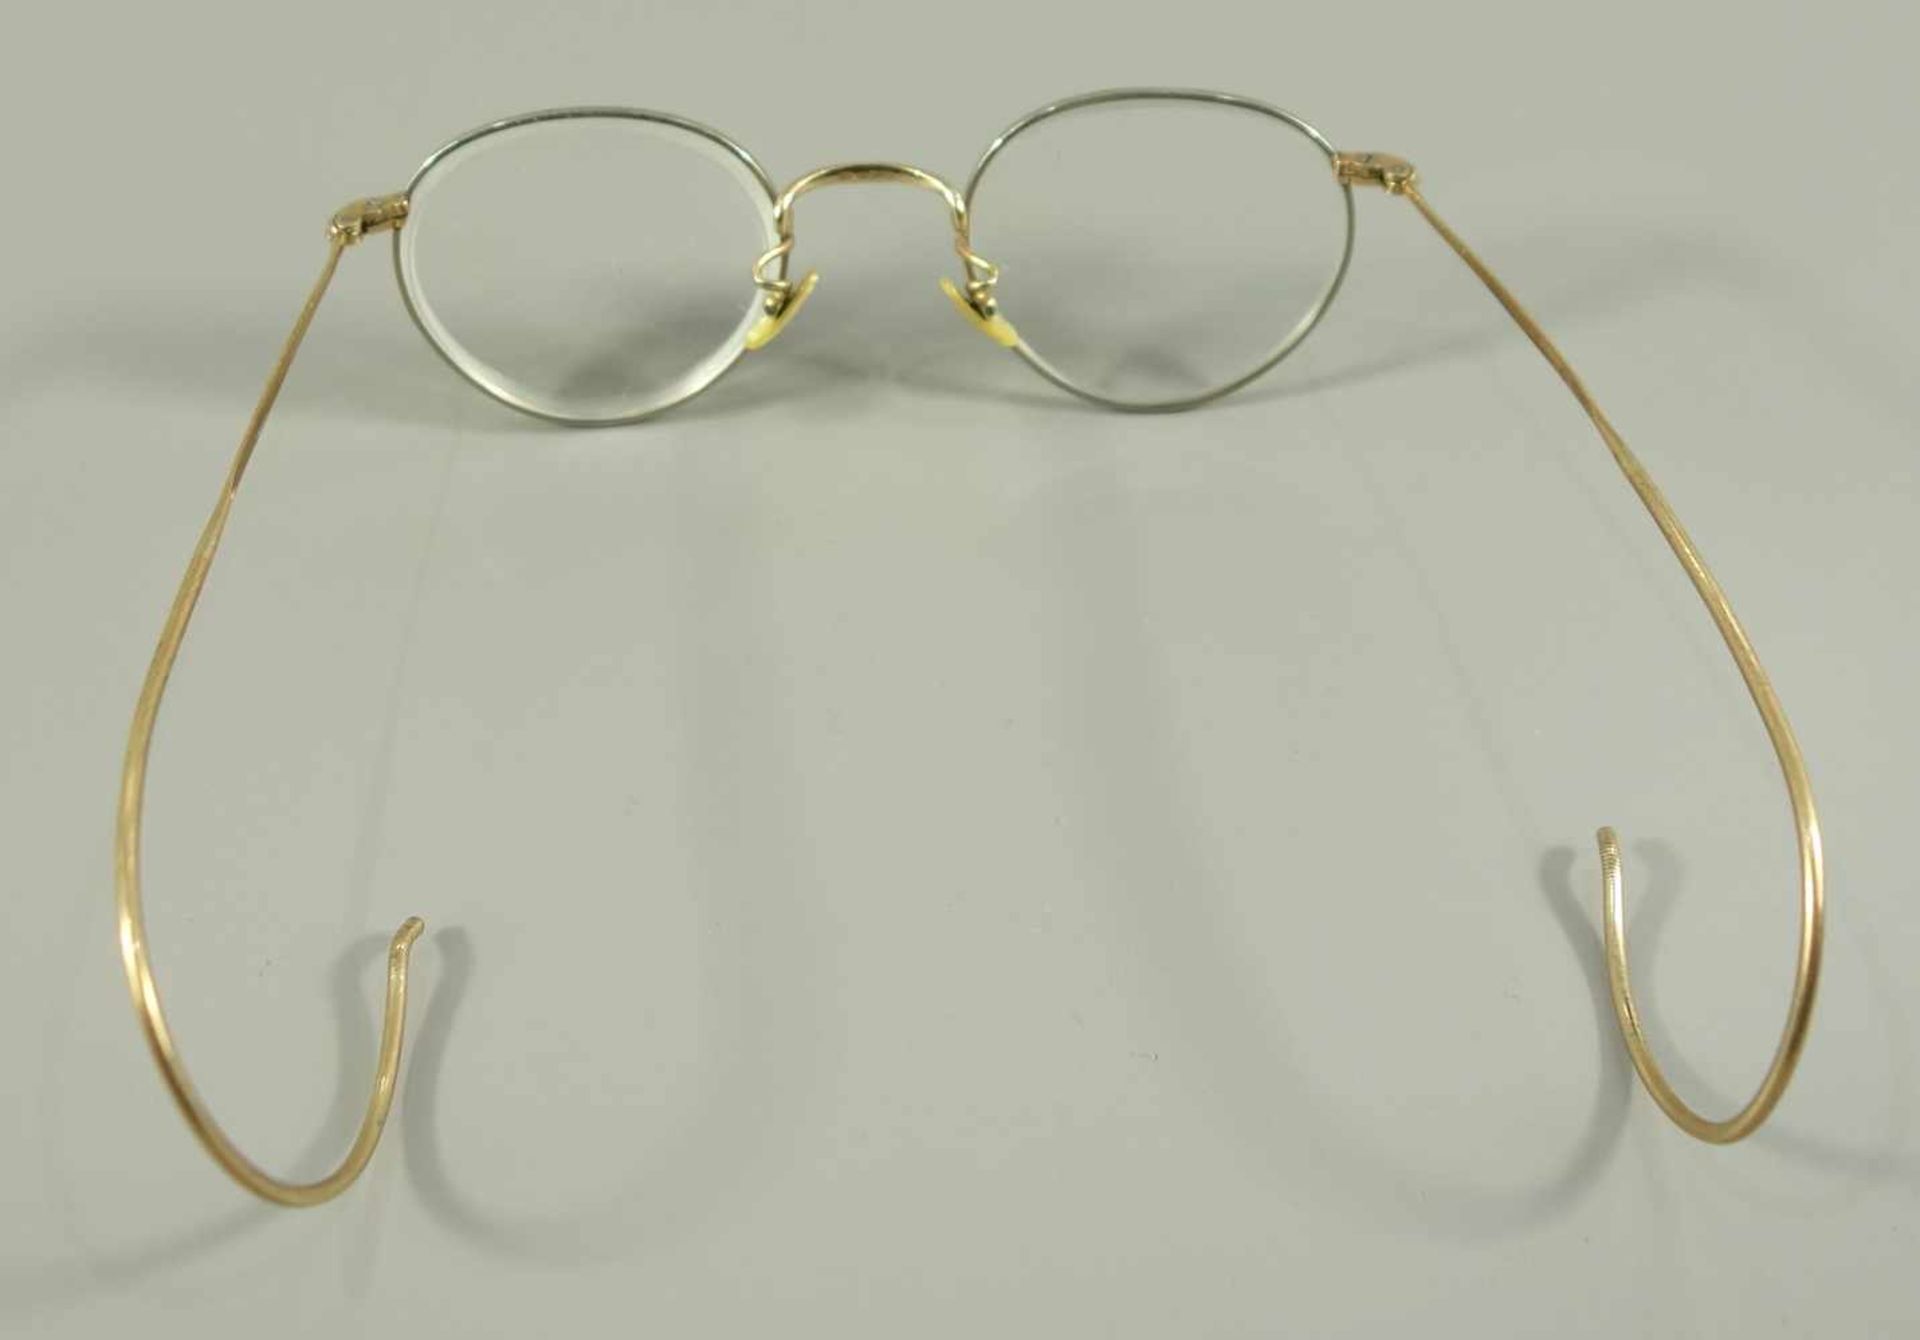 Brille "Melior", um 1920, biegbare Bügel, vergoldet, mit Gläserstärken, im Etui - Bild 2 aus 2